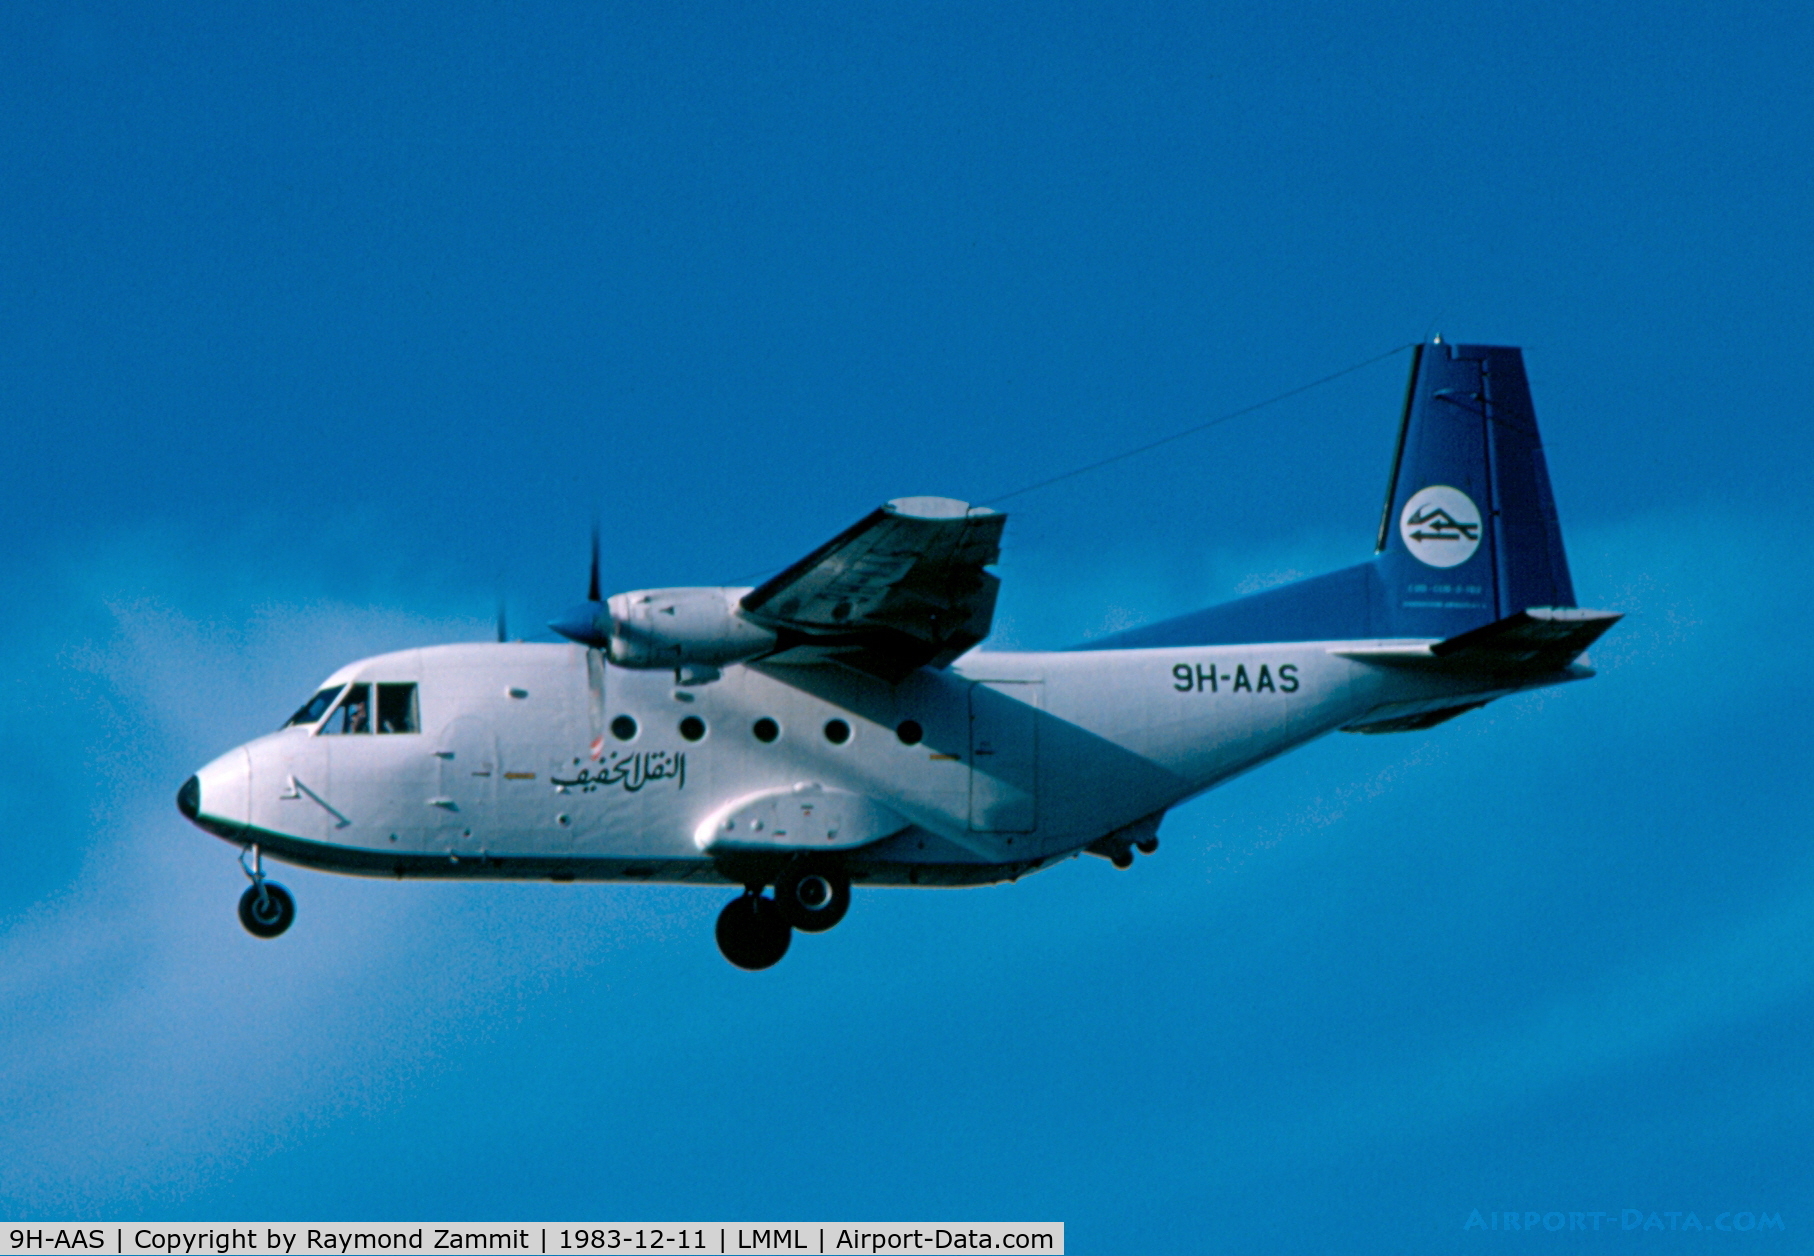 9H-AAS, 1980 CASA C-212-200 Aviocar C/N 162, CASA C212 Aviocar 9H-AAS Libyan Arab Airlines